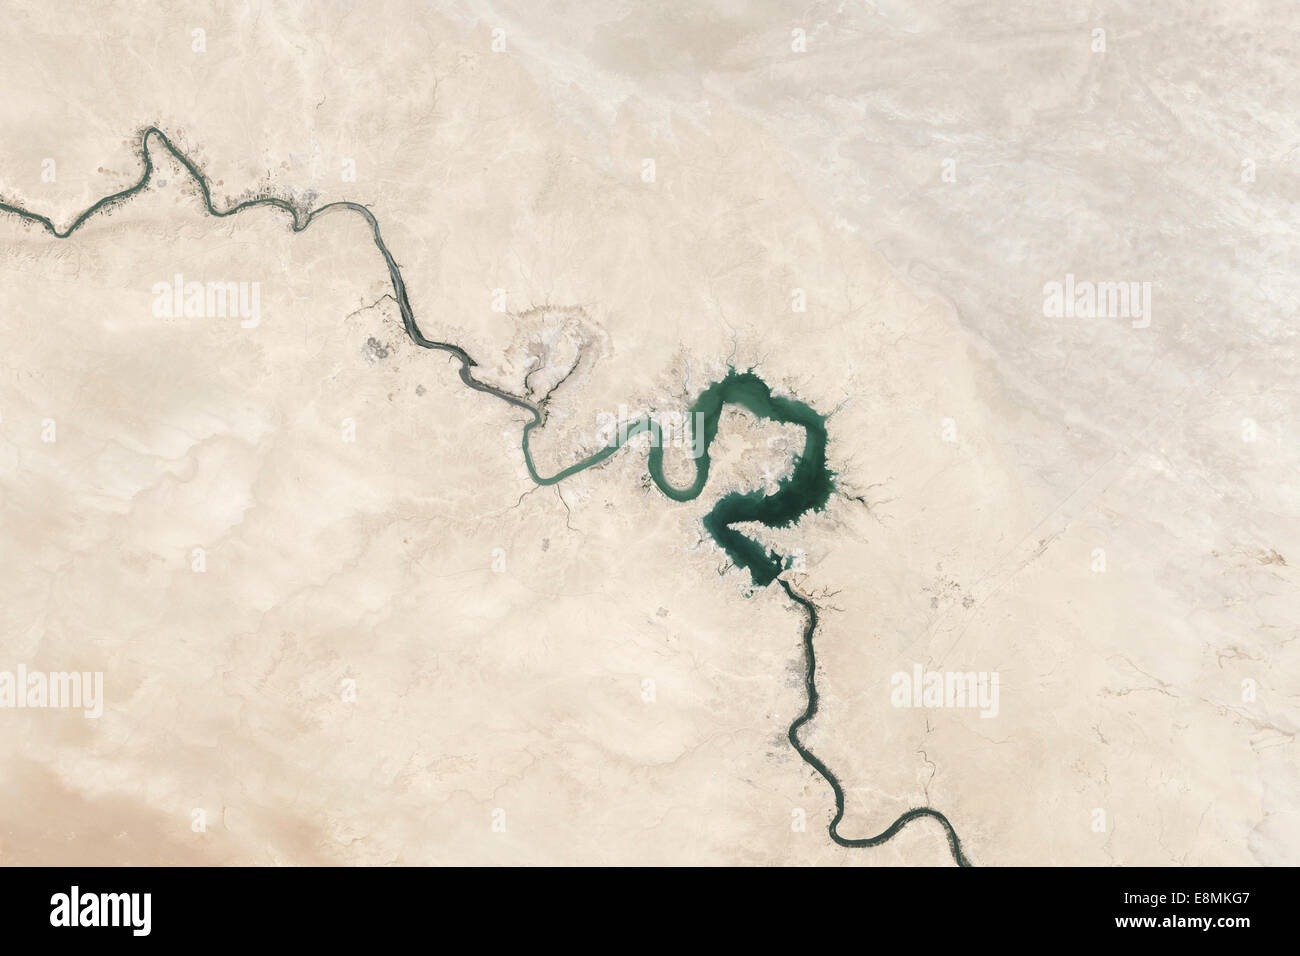 15 septembre 2009 - couleur naturelle image de réservoir de Qadissiya en Iraq. Banque D'Images